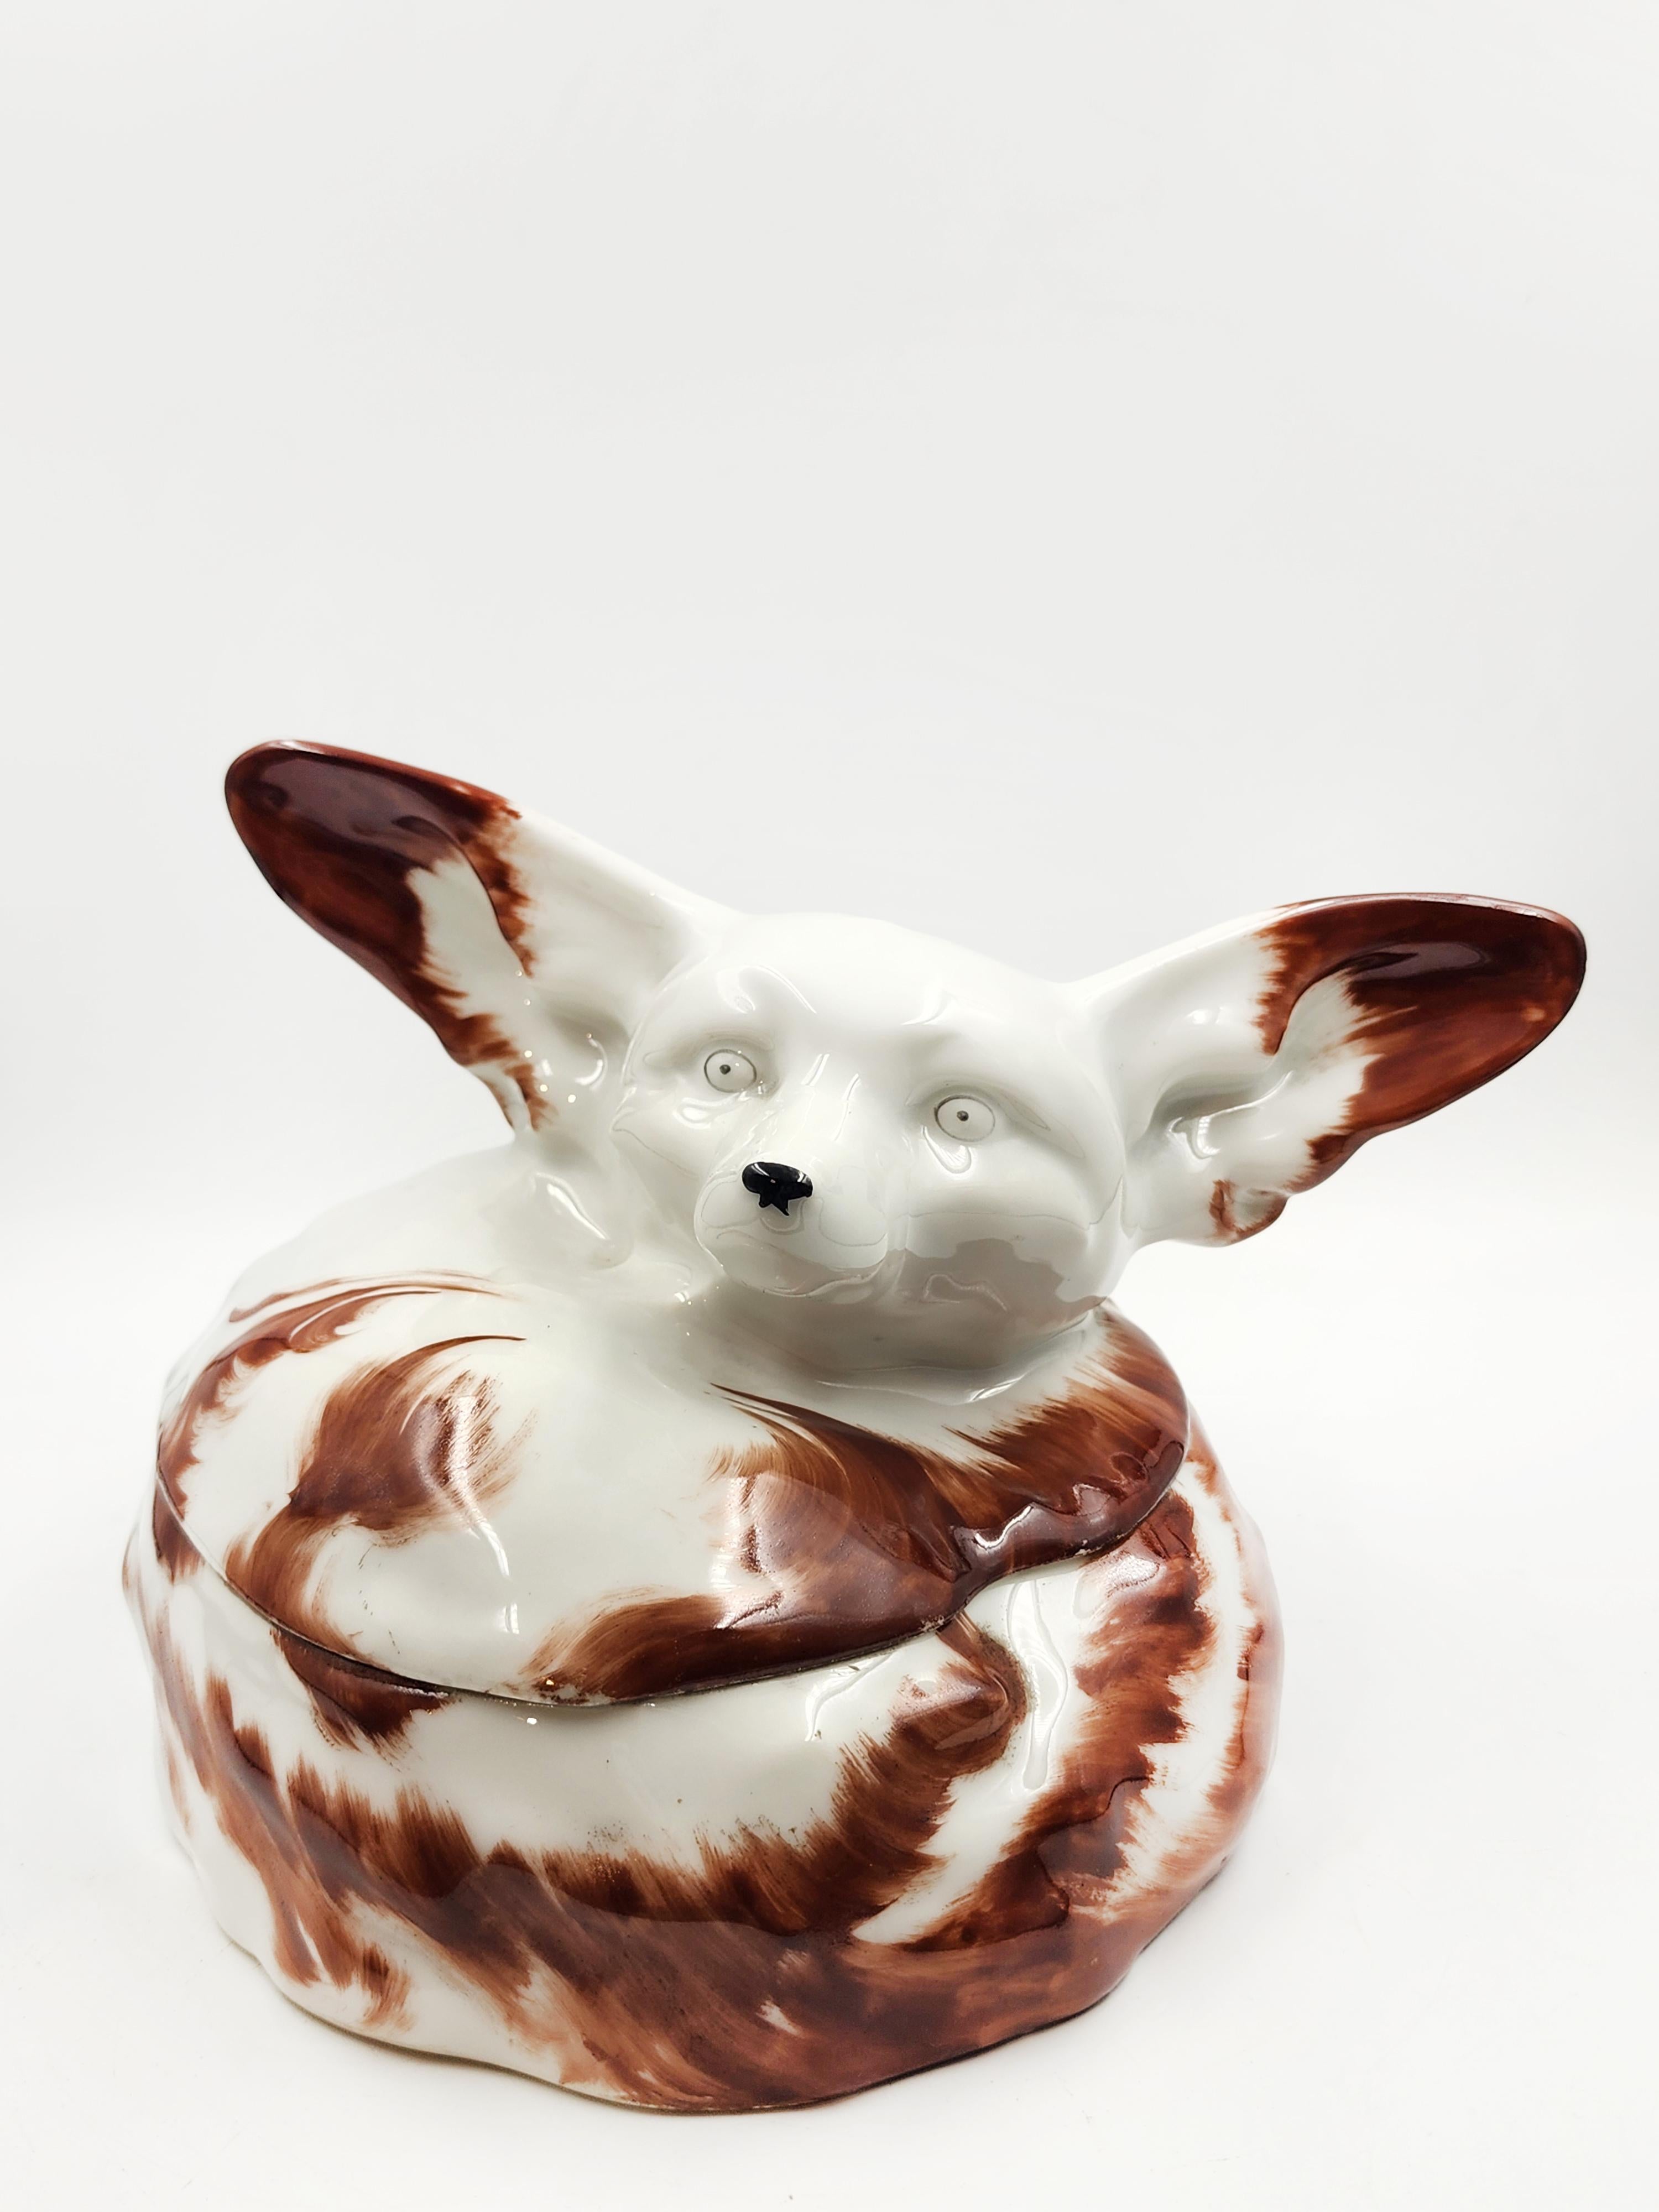 Boîte en porcelaine d'Édouard-Marcel SANDOZ
Belle boîte en porcelaine représentant un renard fennec en blanc avec des taches brunes, Fabriquée par Théodore Haviland Porcelaine, le modèle a été créé en 1921 par le grand sculpteur suisse